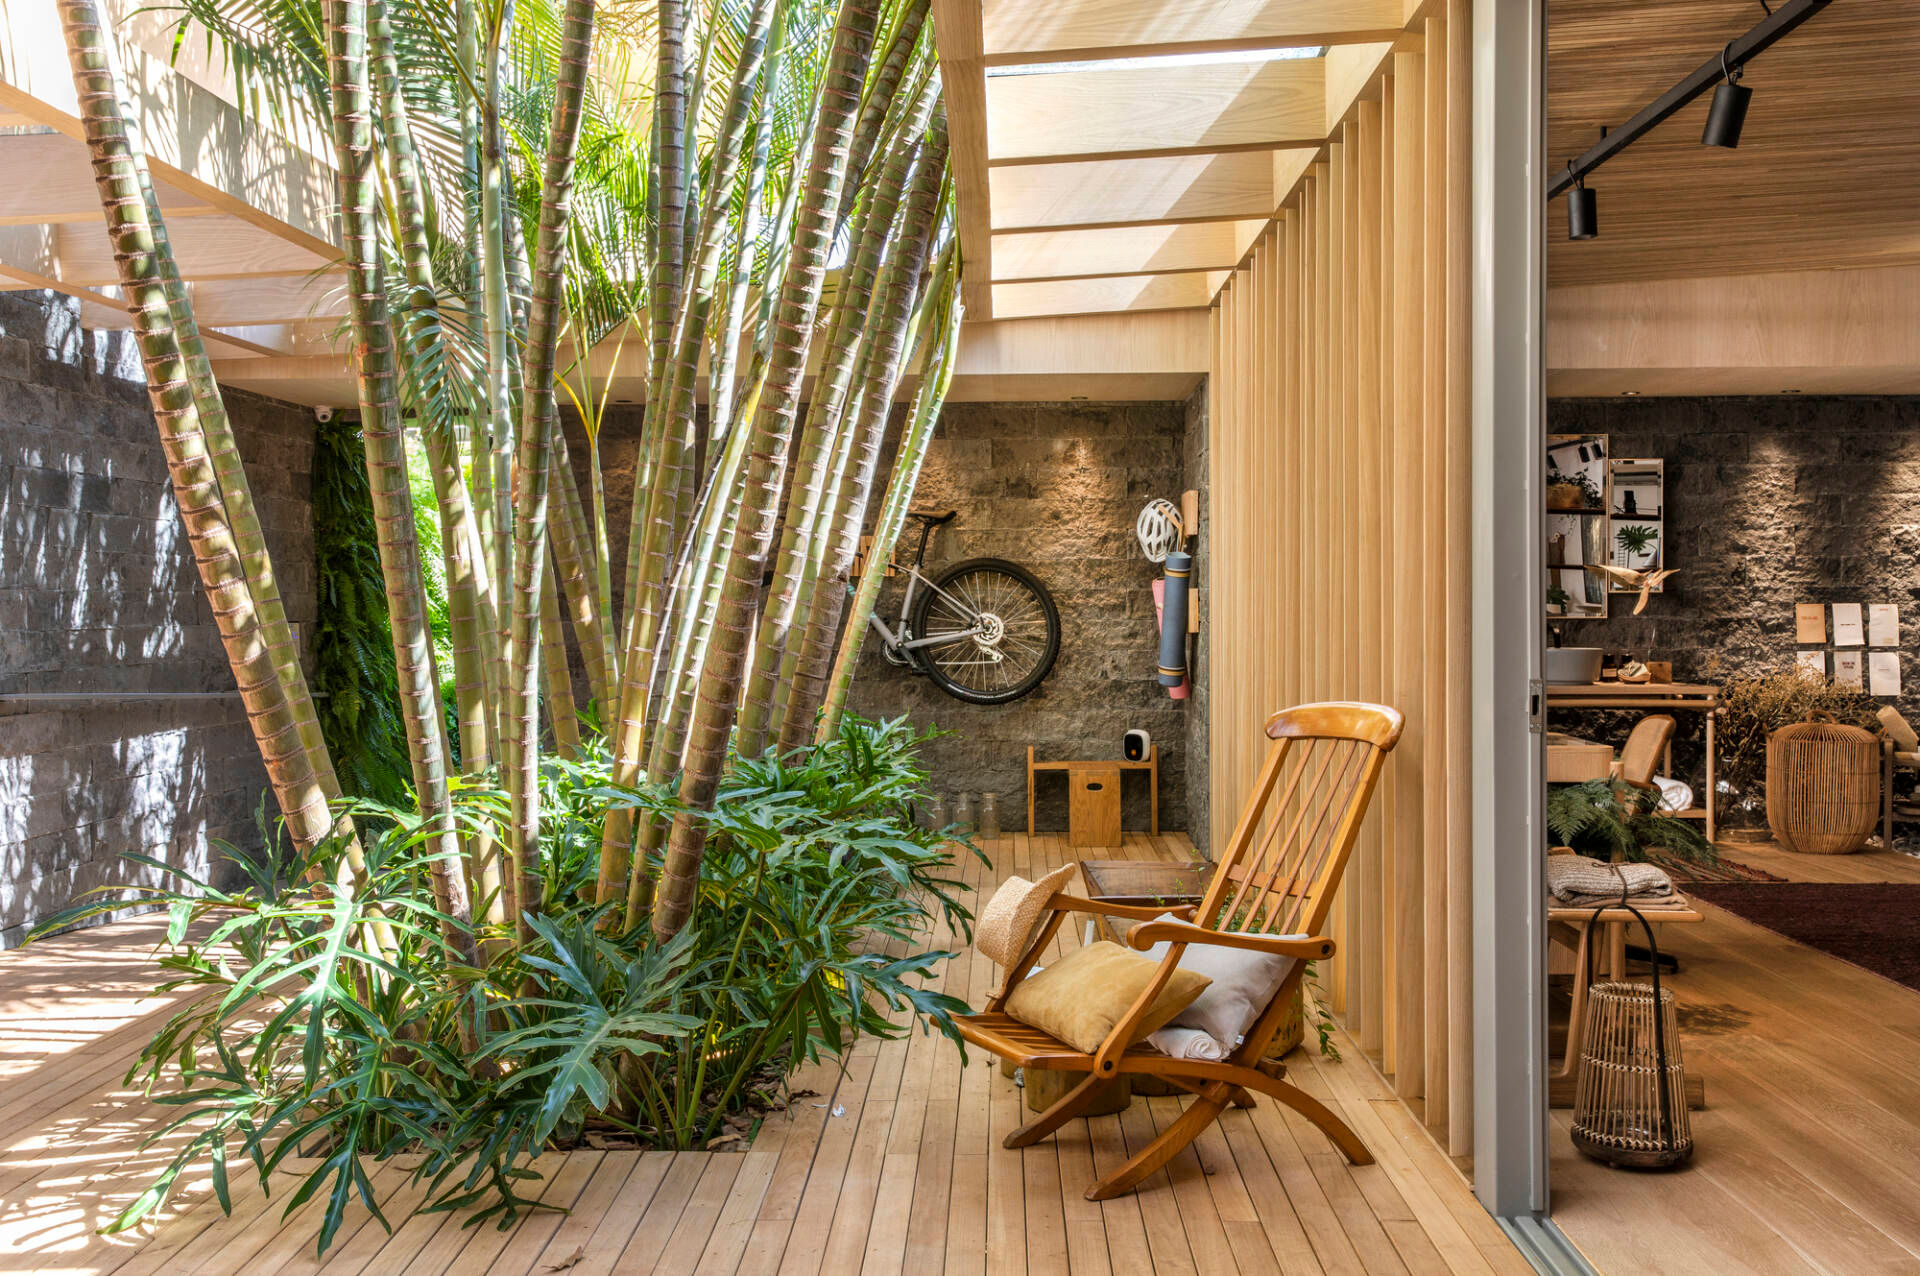 Forest House là một ngôi nhà có vật liệu chủ đạo là gỗ, đá tự nhiên cùng hệ thống cây xanh tươi tốt được trồng ngay trong nhà. 